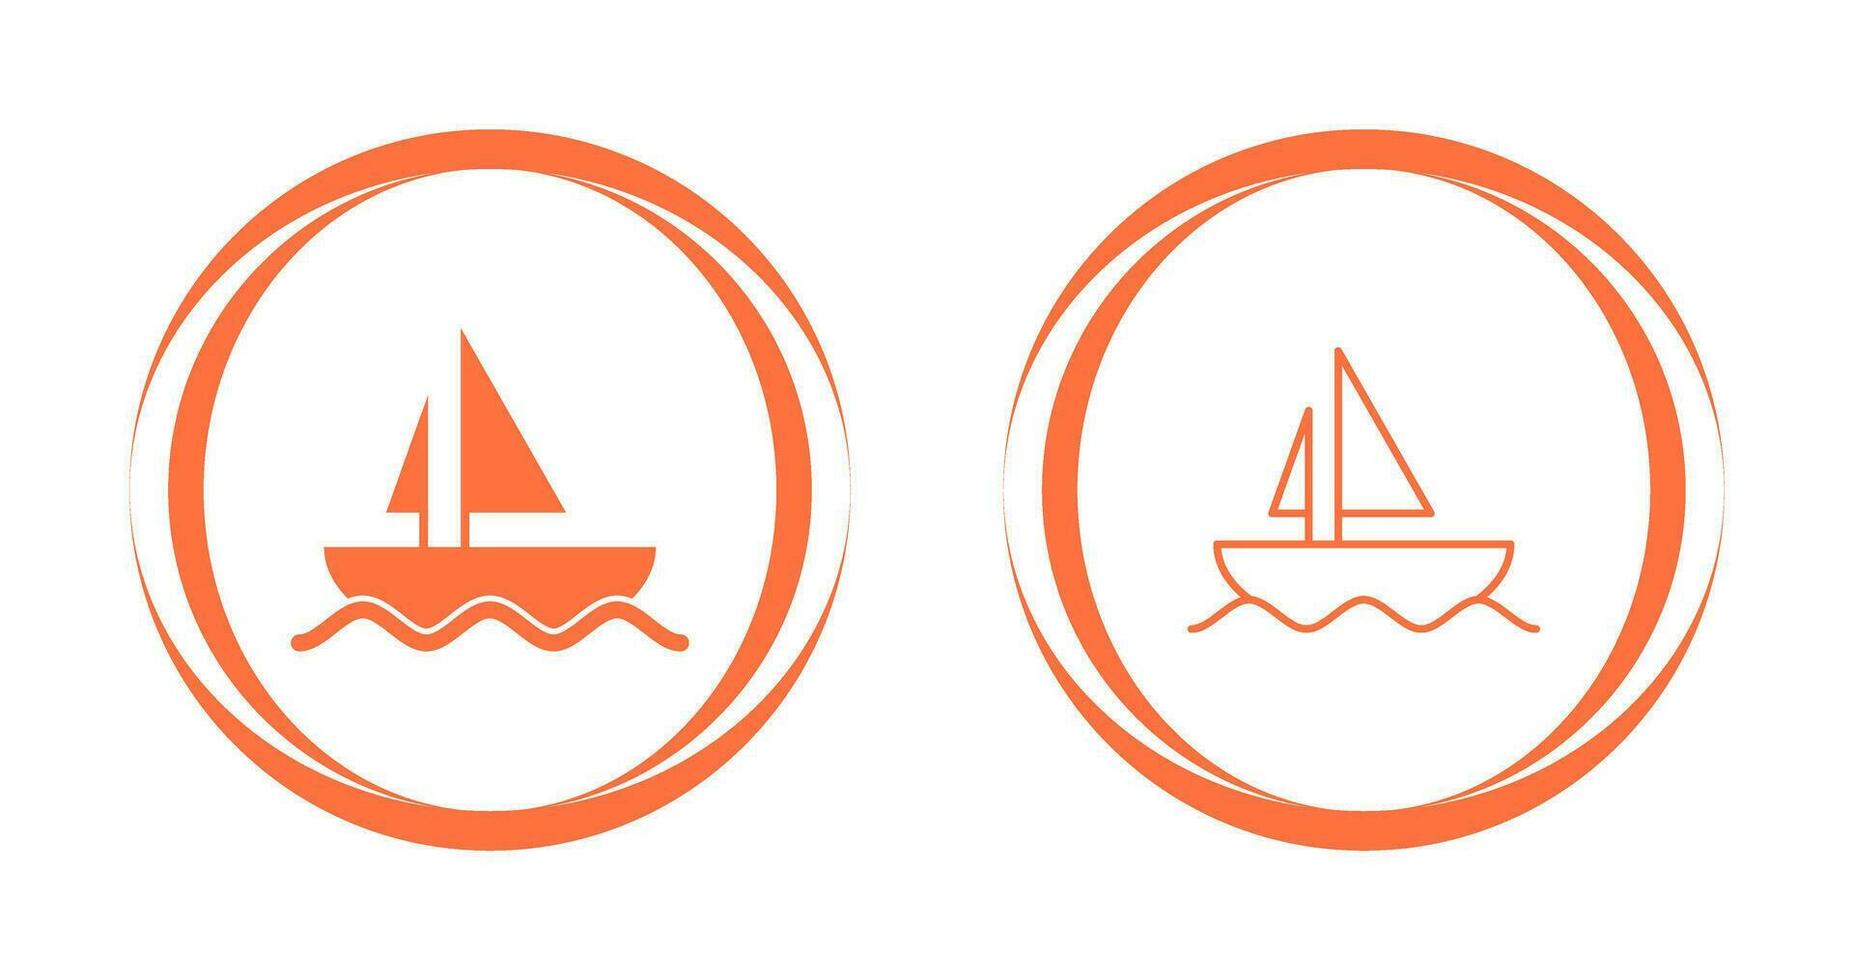 ícone de vetor de barco